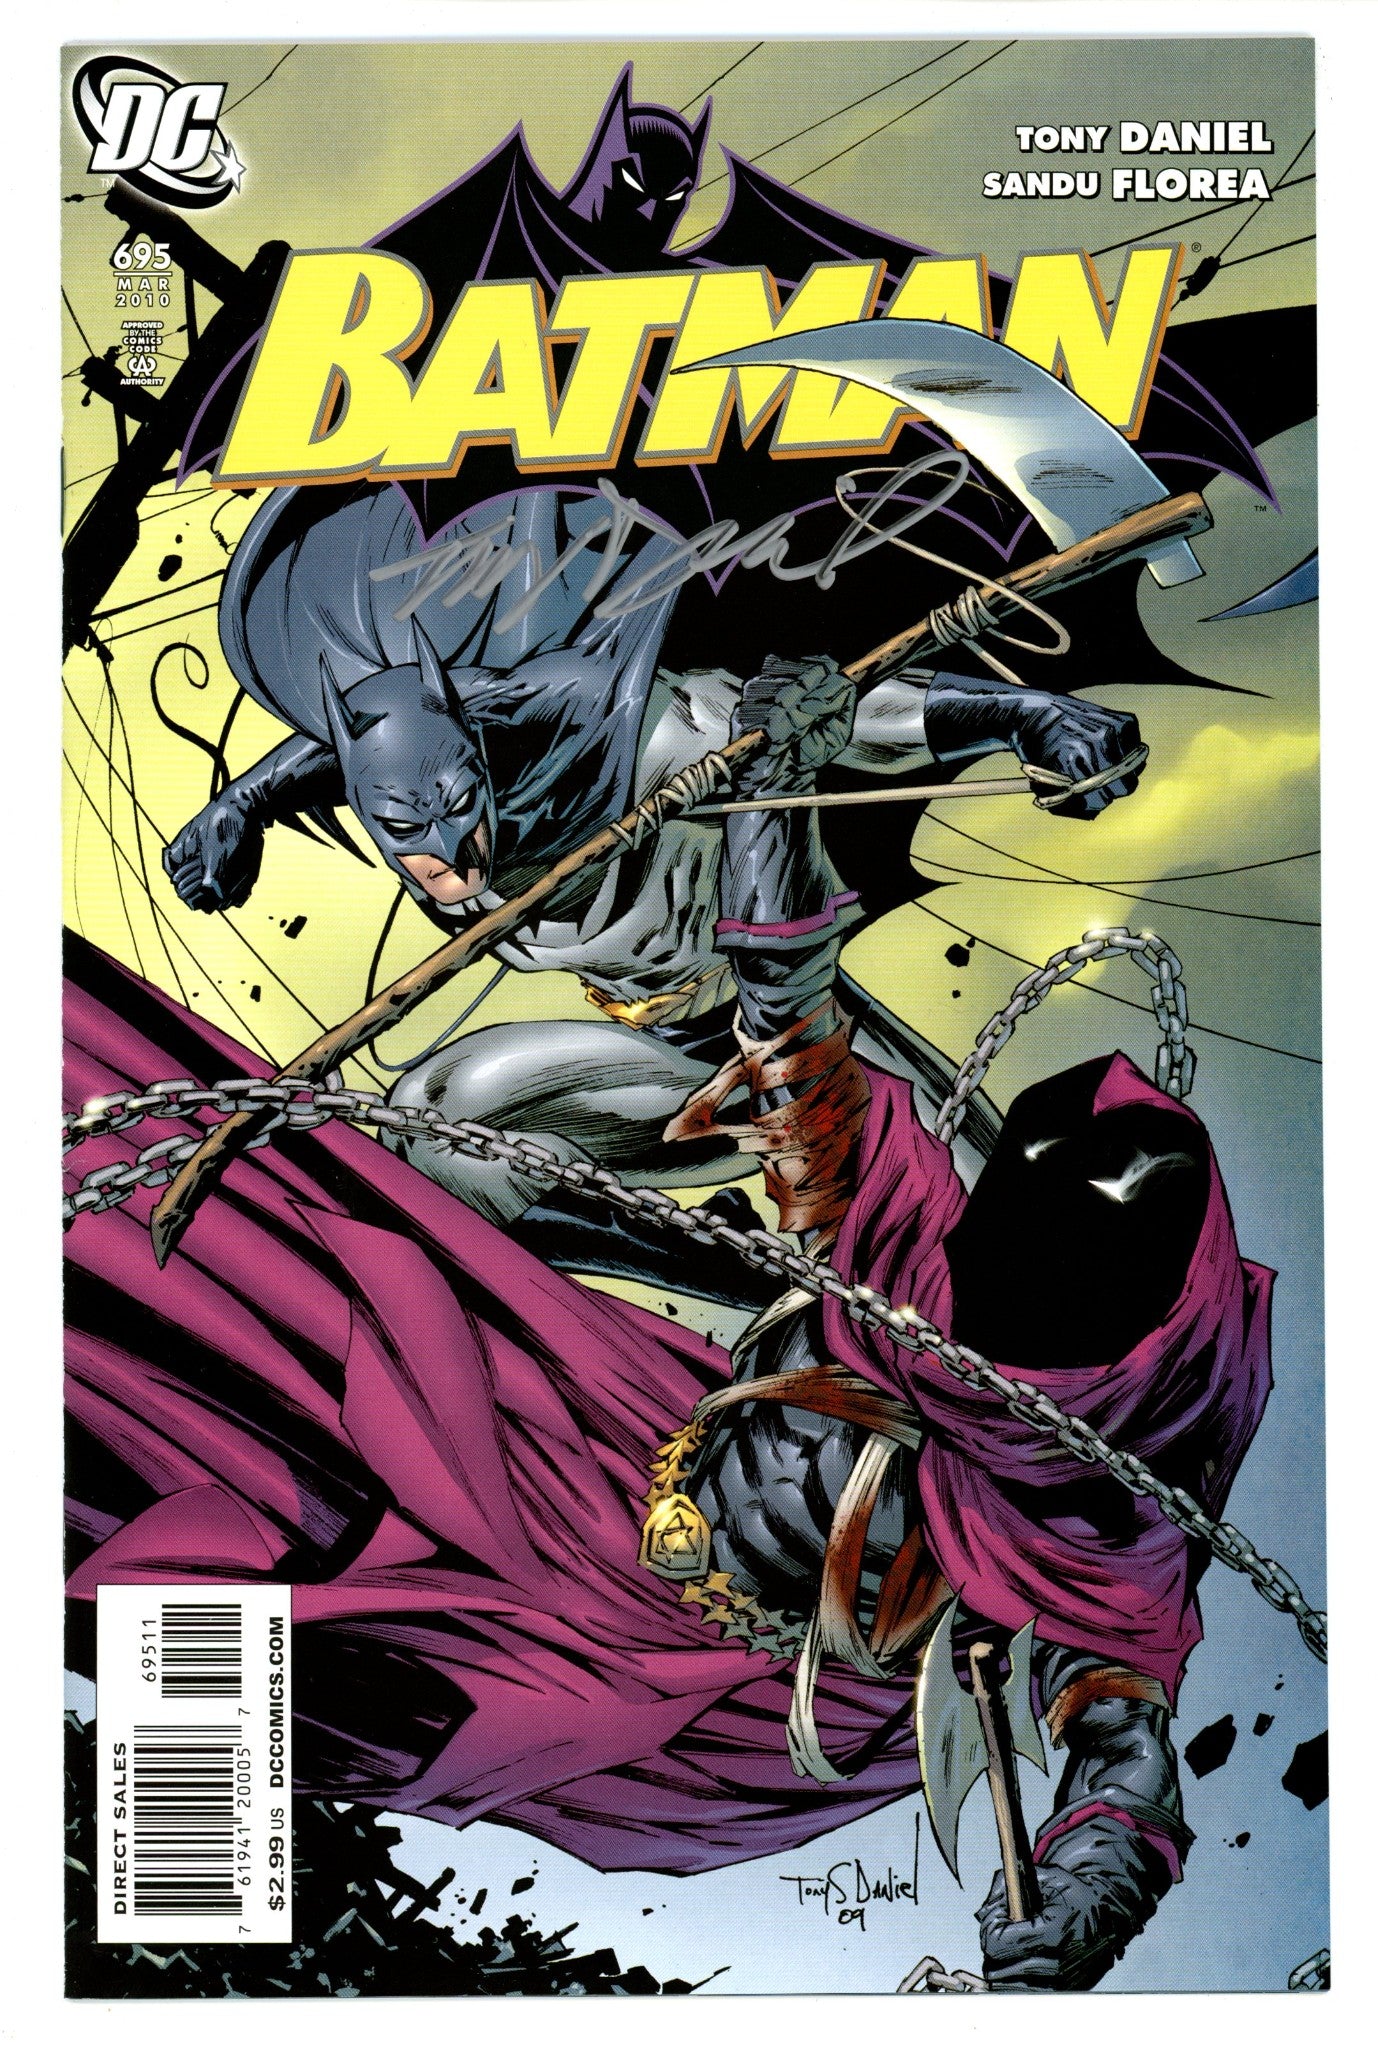 Batman Vol 1 695 NM- (9.2) (2010) Signed x1 Cover Tony Daniel 